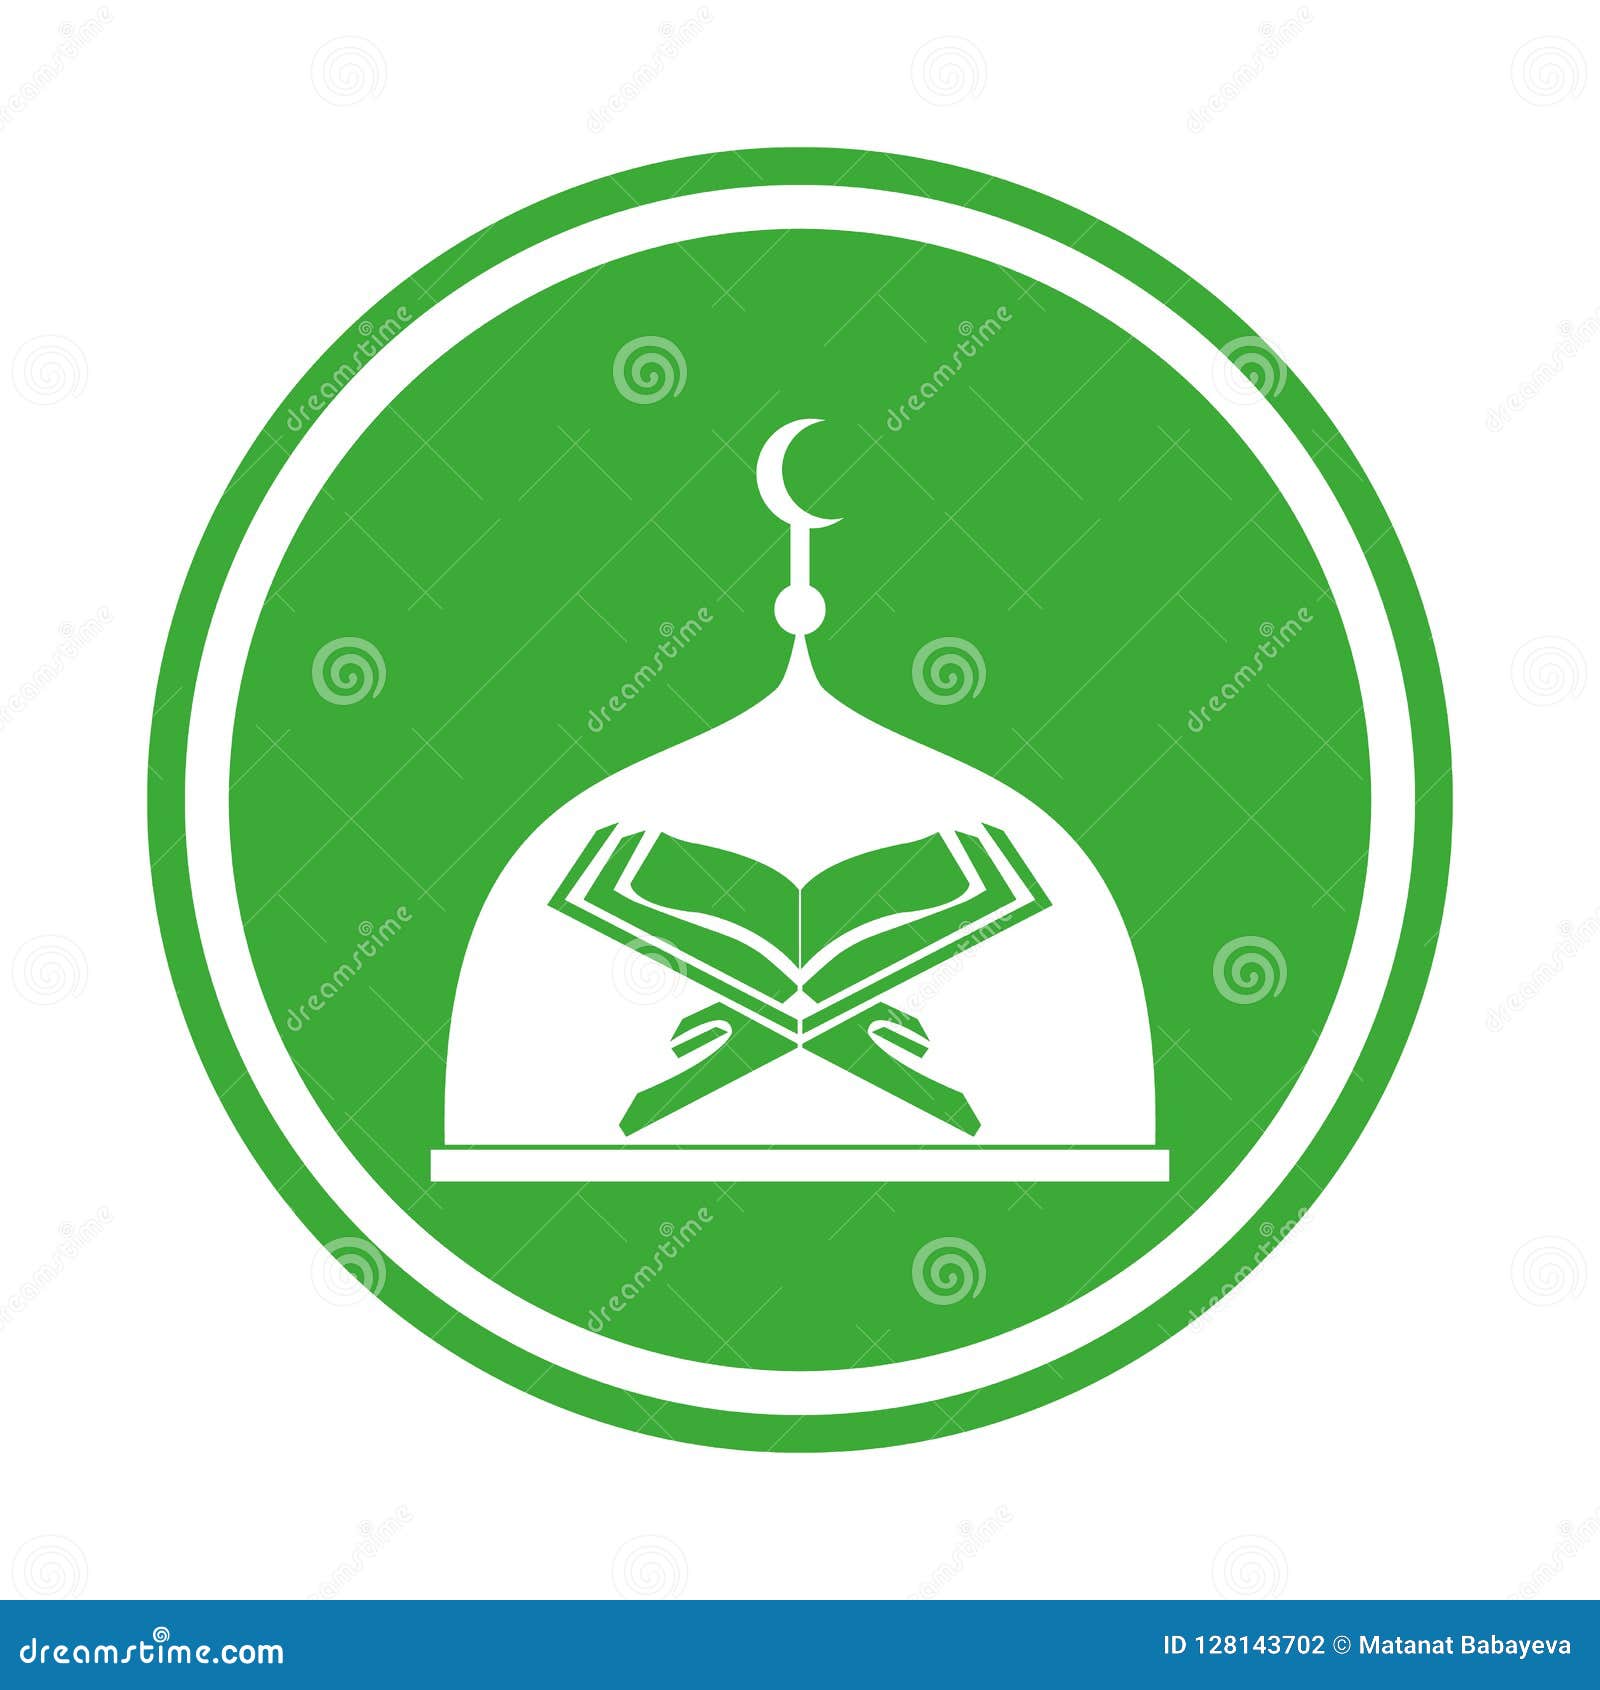 Mosque logo - Có phải bạn đang muốn tìm một logo cho ngôi đền Hồi giáo đầy ý nghĩa? Hãy khám phá bộ sưu tập các logo đầy cảm hứng của chúng tôi, được thiết kế với đầy tâm huyết và thiêng liêng, để tôn vinh đức tin và văn hóa Hồi giáo.